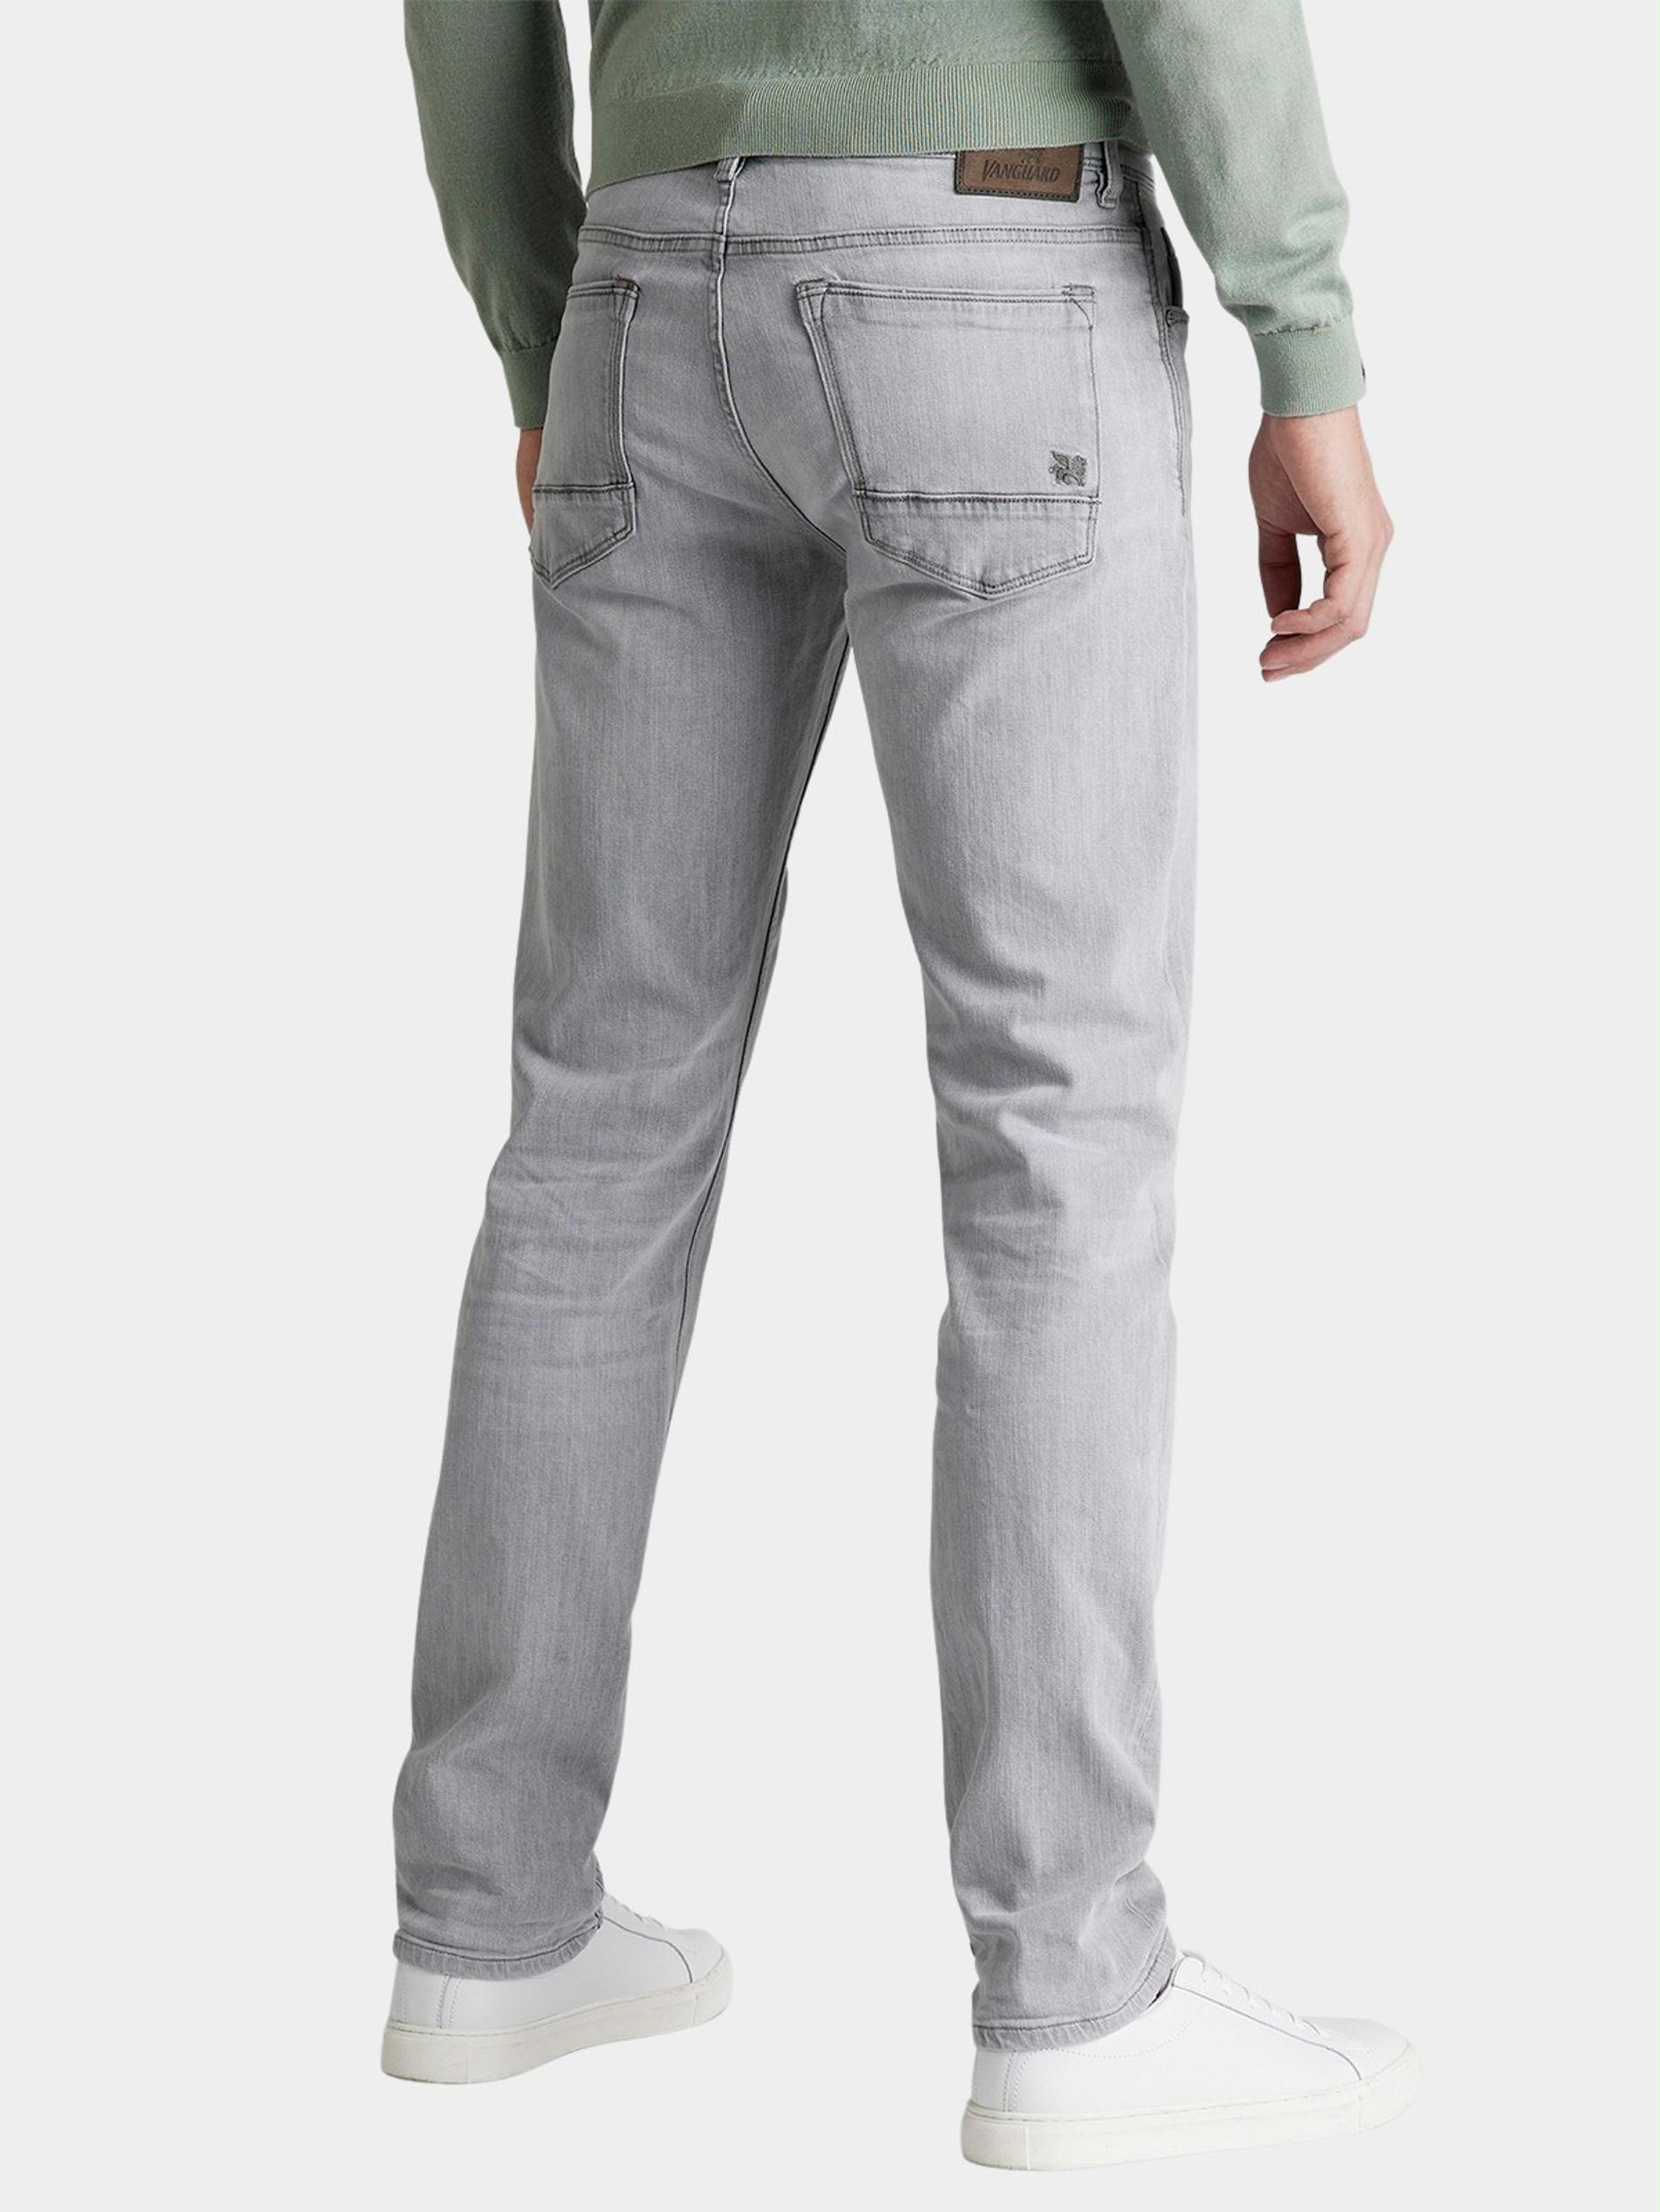 vertaler olifant mozaïek Vanguard 5-Pocket Jeans Grijs V7 RIDER LIGHT GREY COMFORT VTR2203705/LGC |  Bos Men Shop